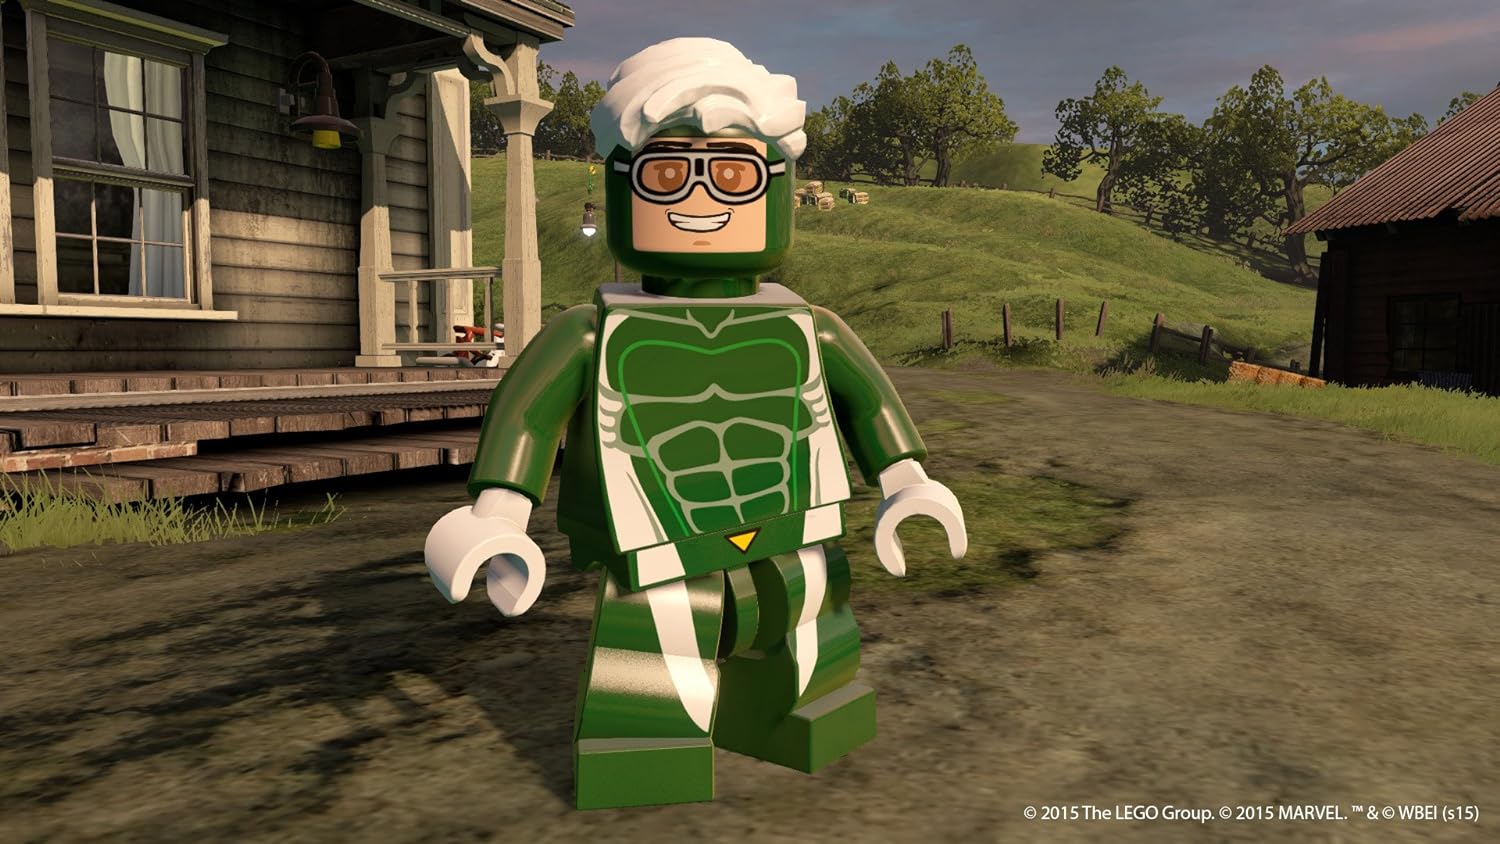 Lego Marvel's Avengers Wii U